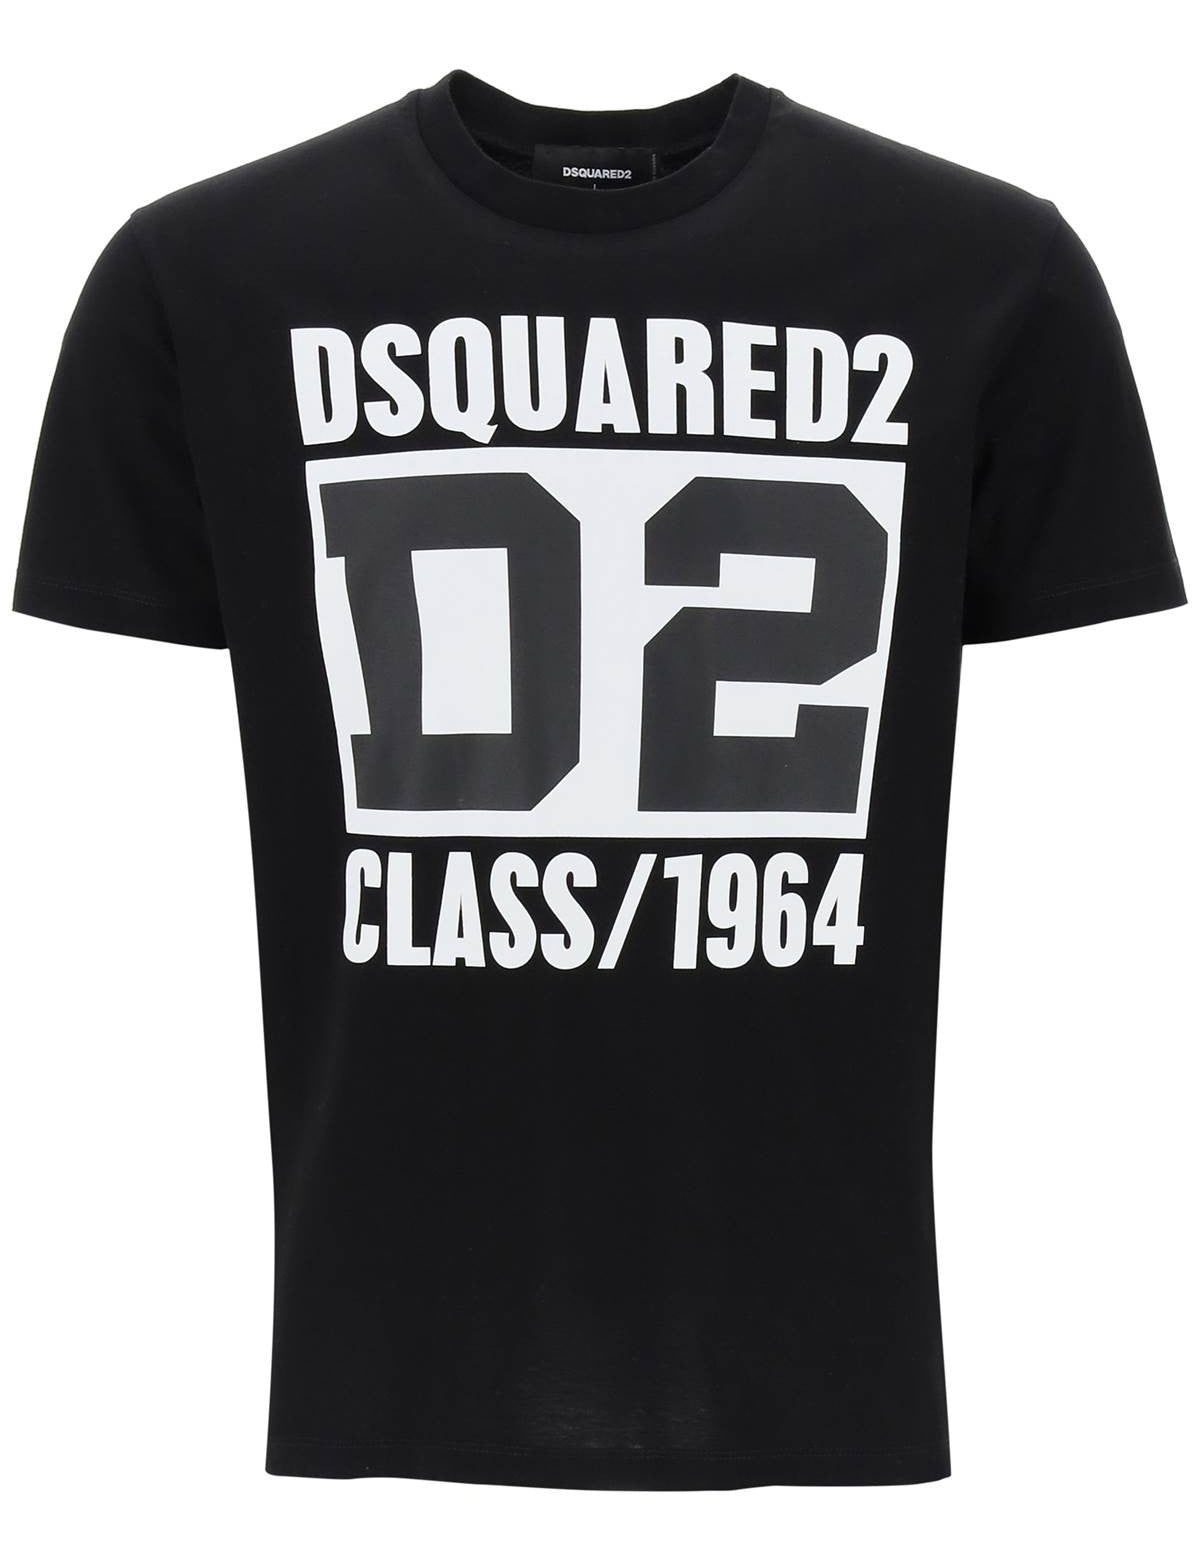 dsquared2-d2-class-1964-cool-fit-t-shirt_543c5e38-b4e4-4e2b-8096-0868b87b3296.jpg